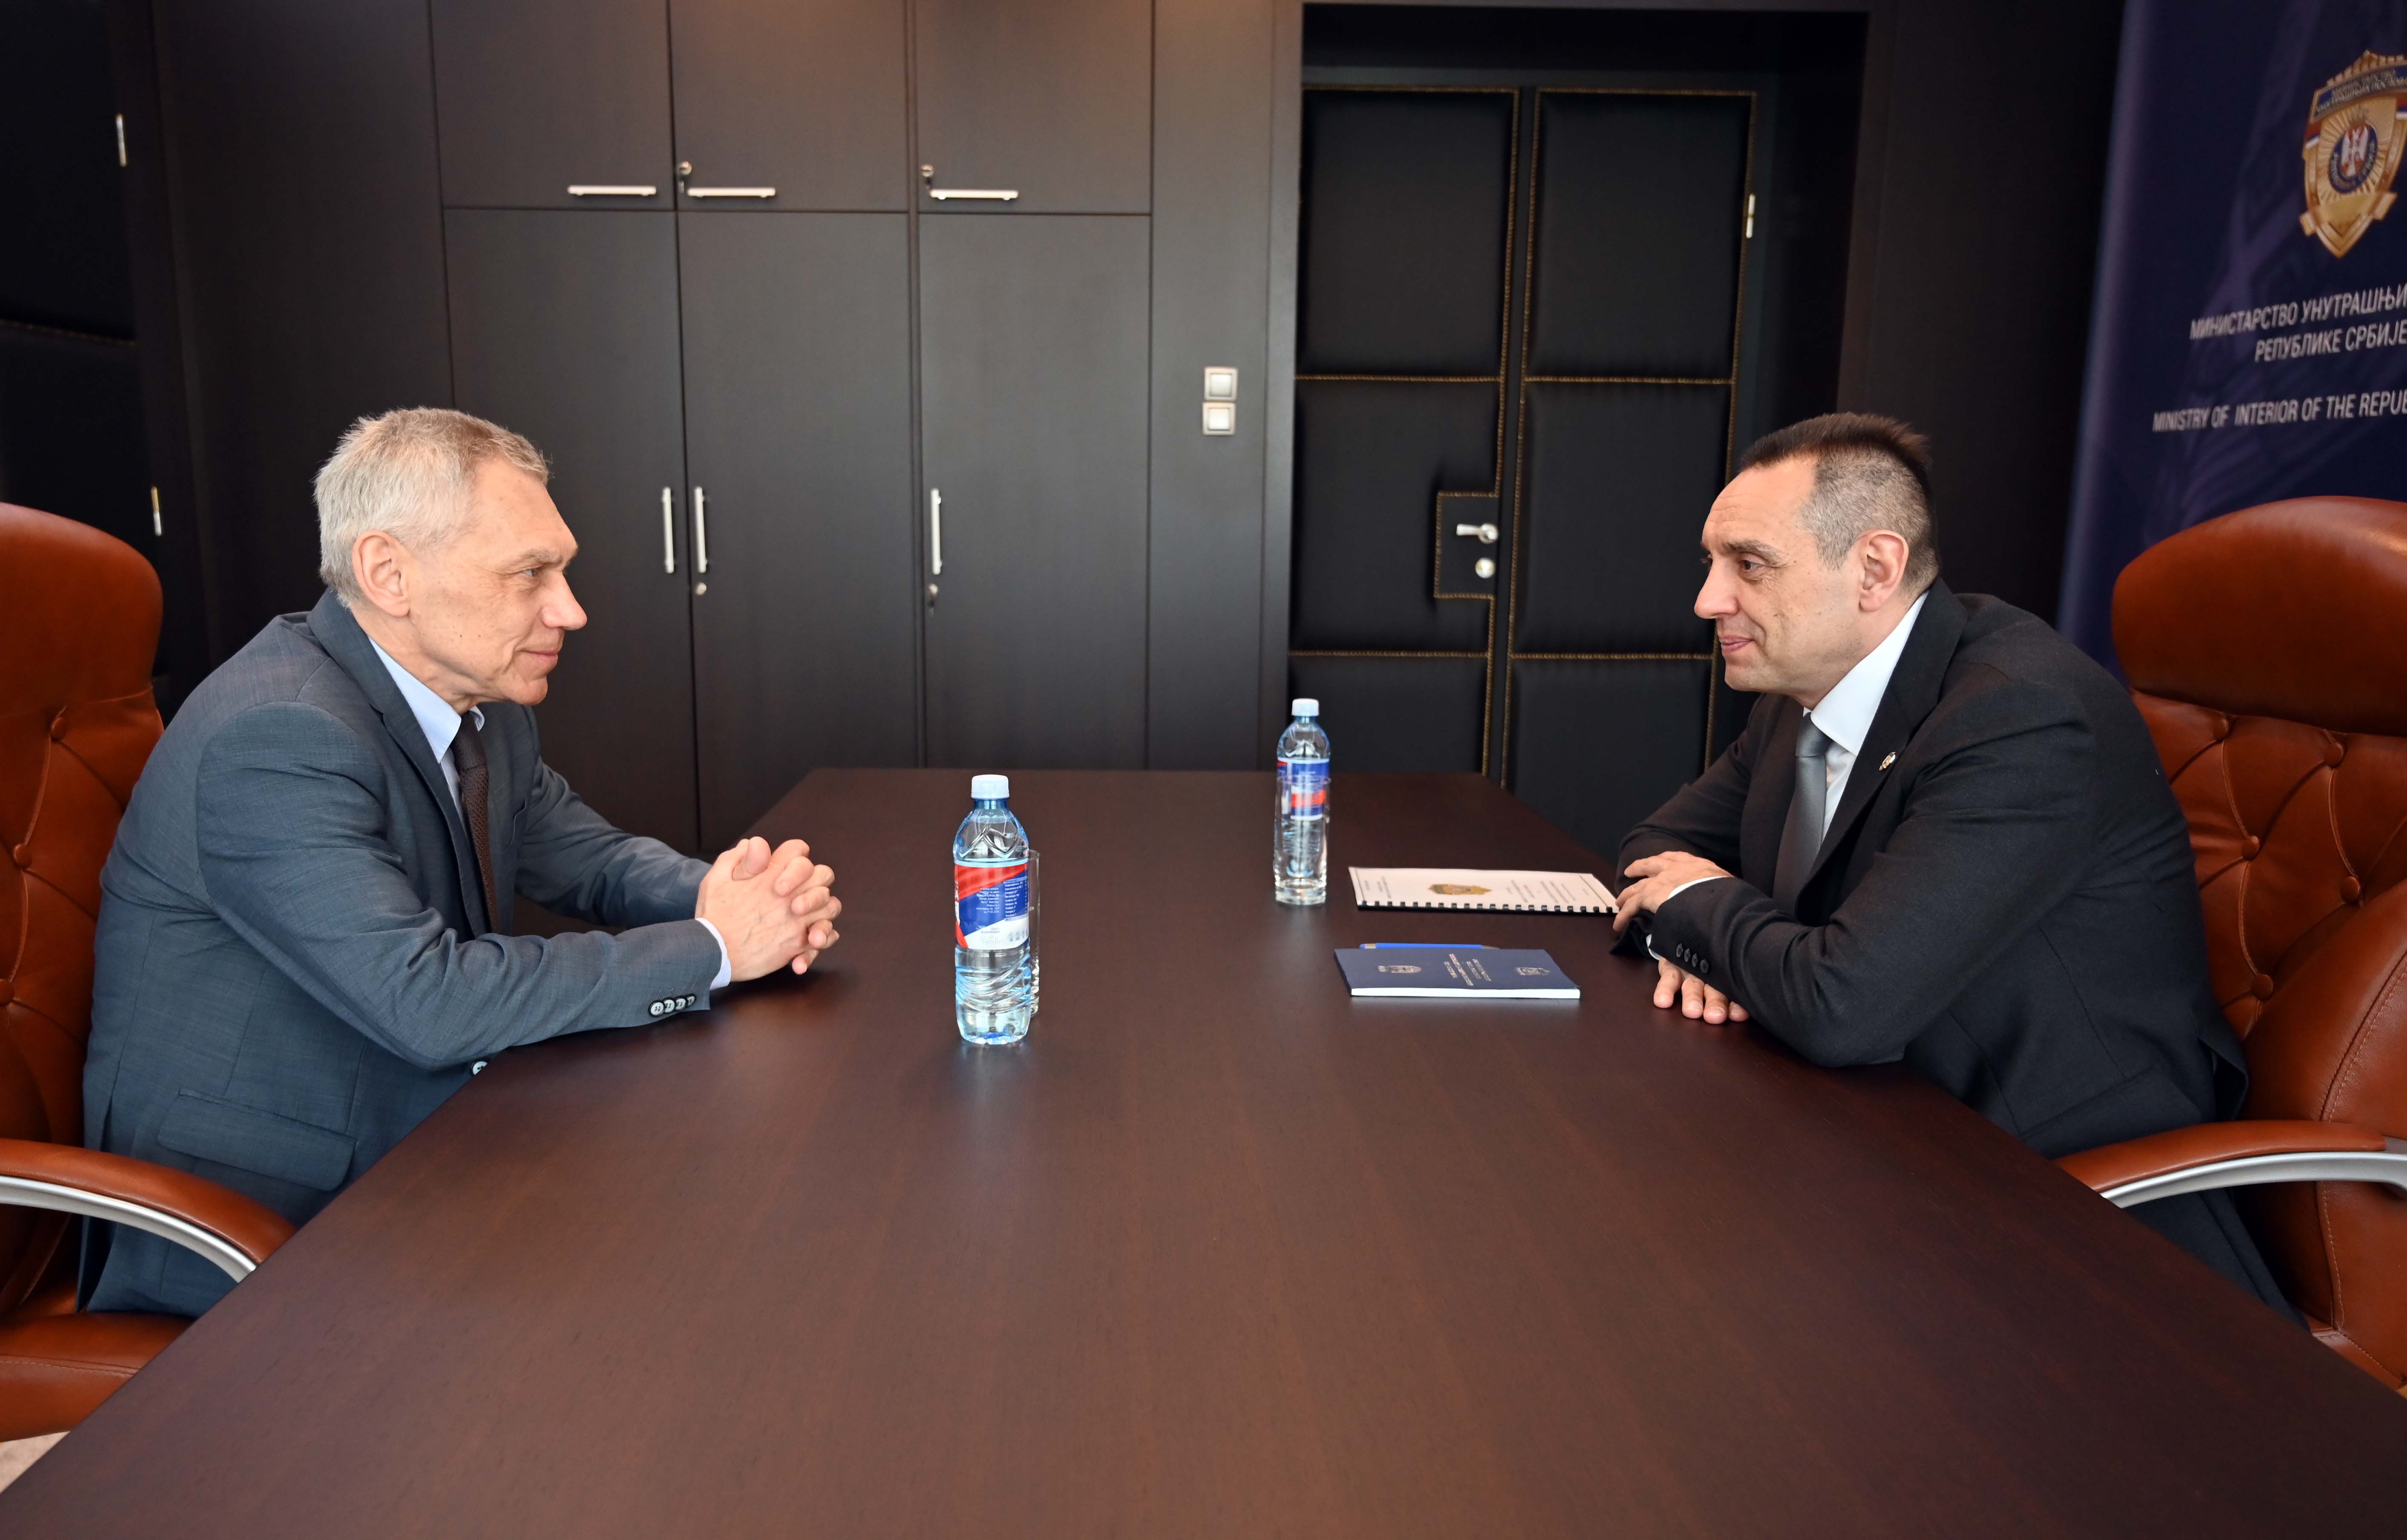 Министар Александар Вулин састао се данас са  амбасадором Руске Федерације у Београду Александром Боцан-Харченком